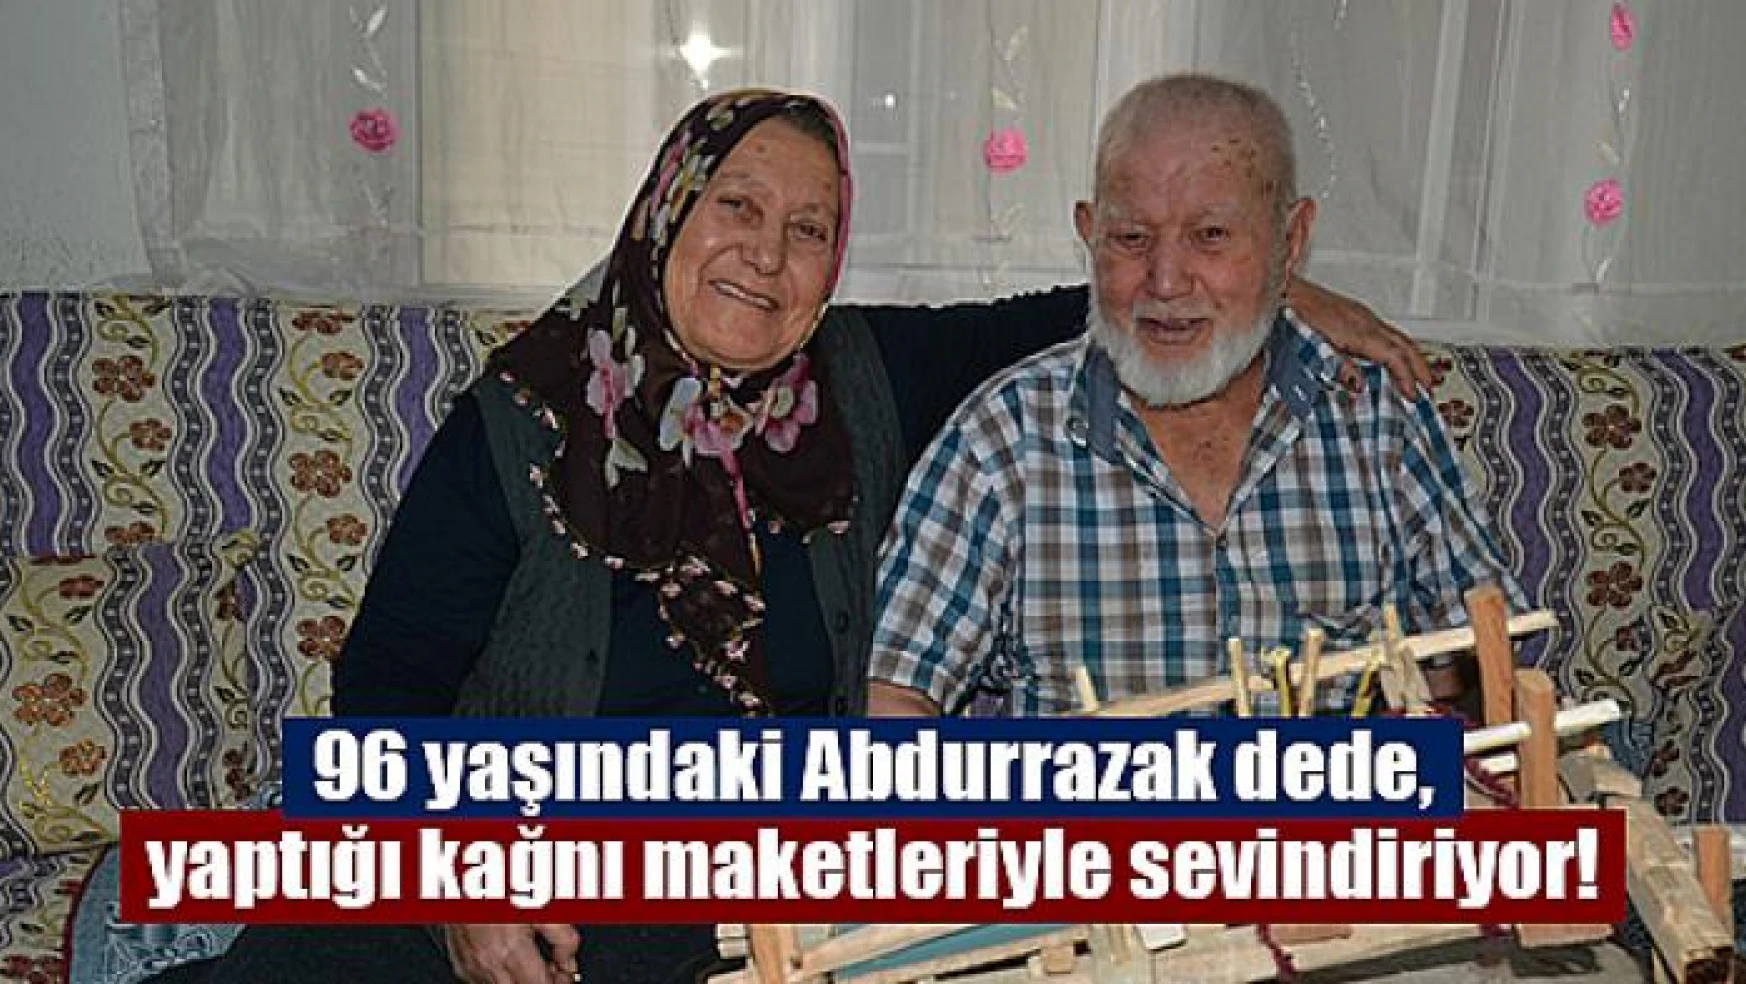 96 yaşındaki Abdurrazak dede, yaptığı kağnı maketleriyle sevindiriyor!